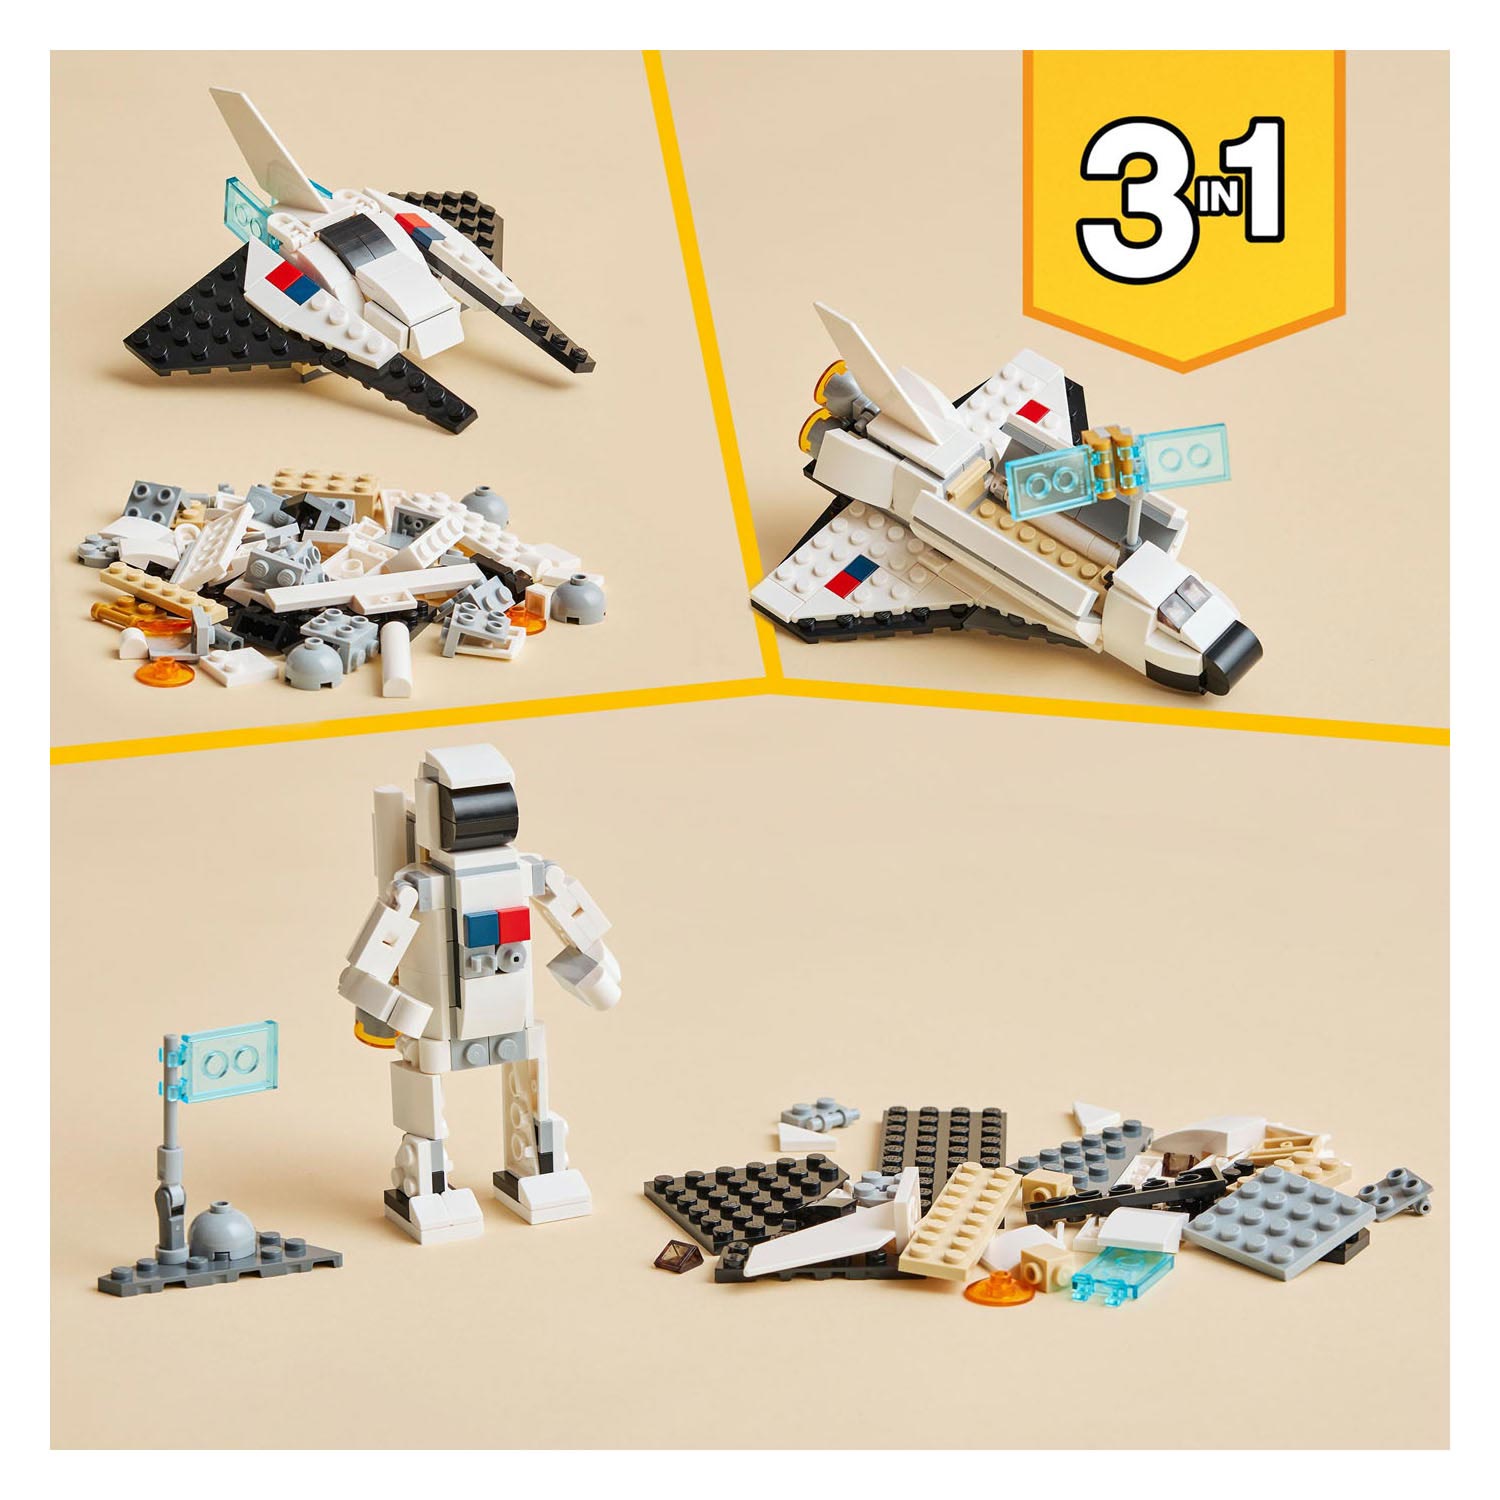 LEGO Creator 31134 La navette spatiale